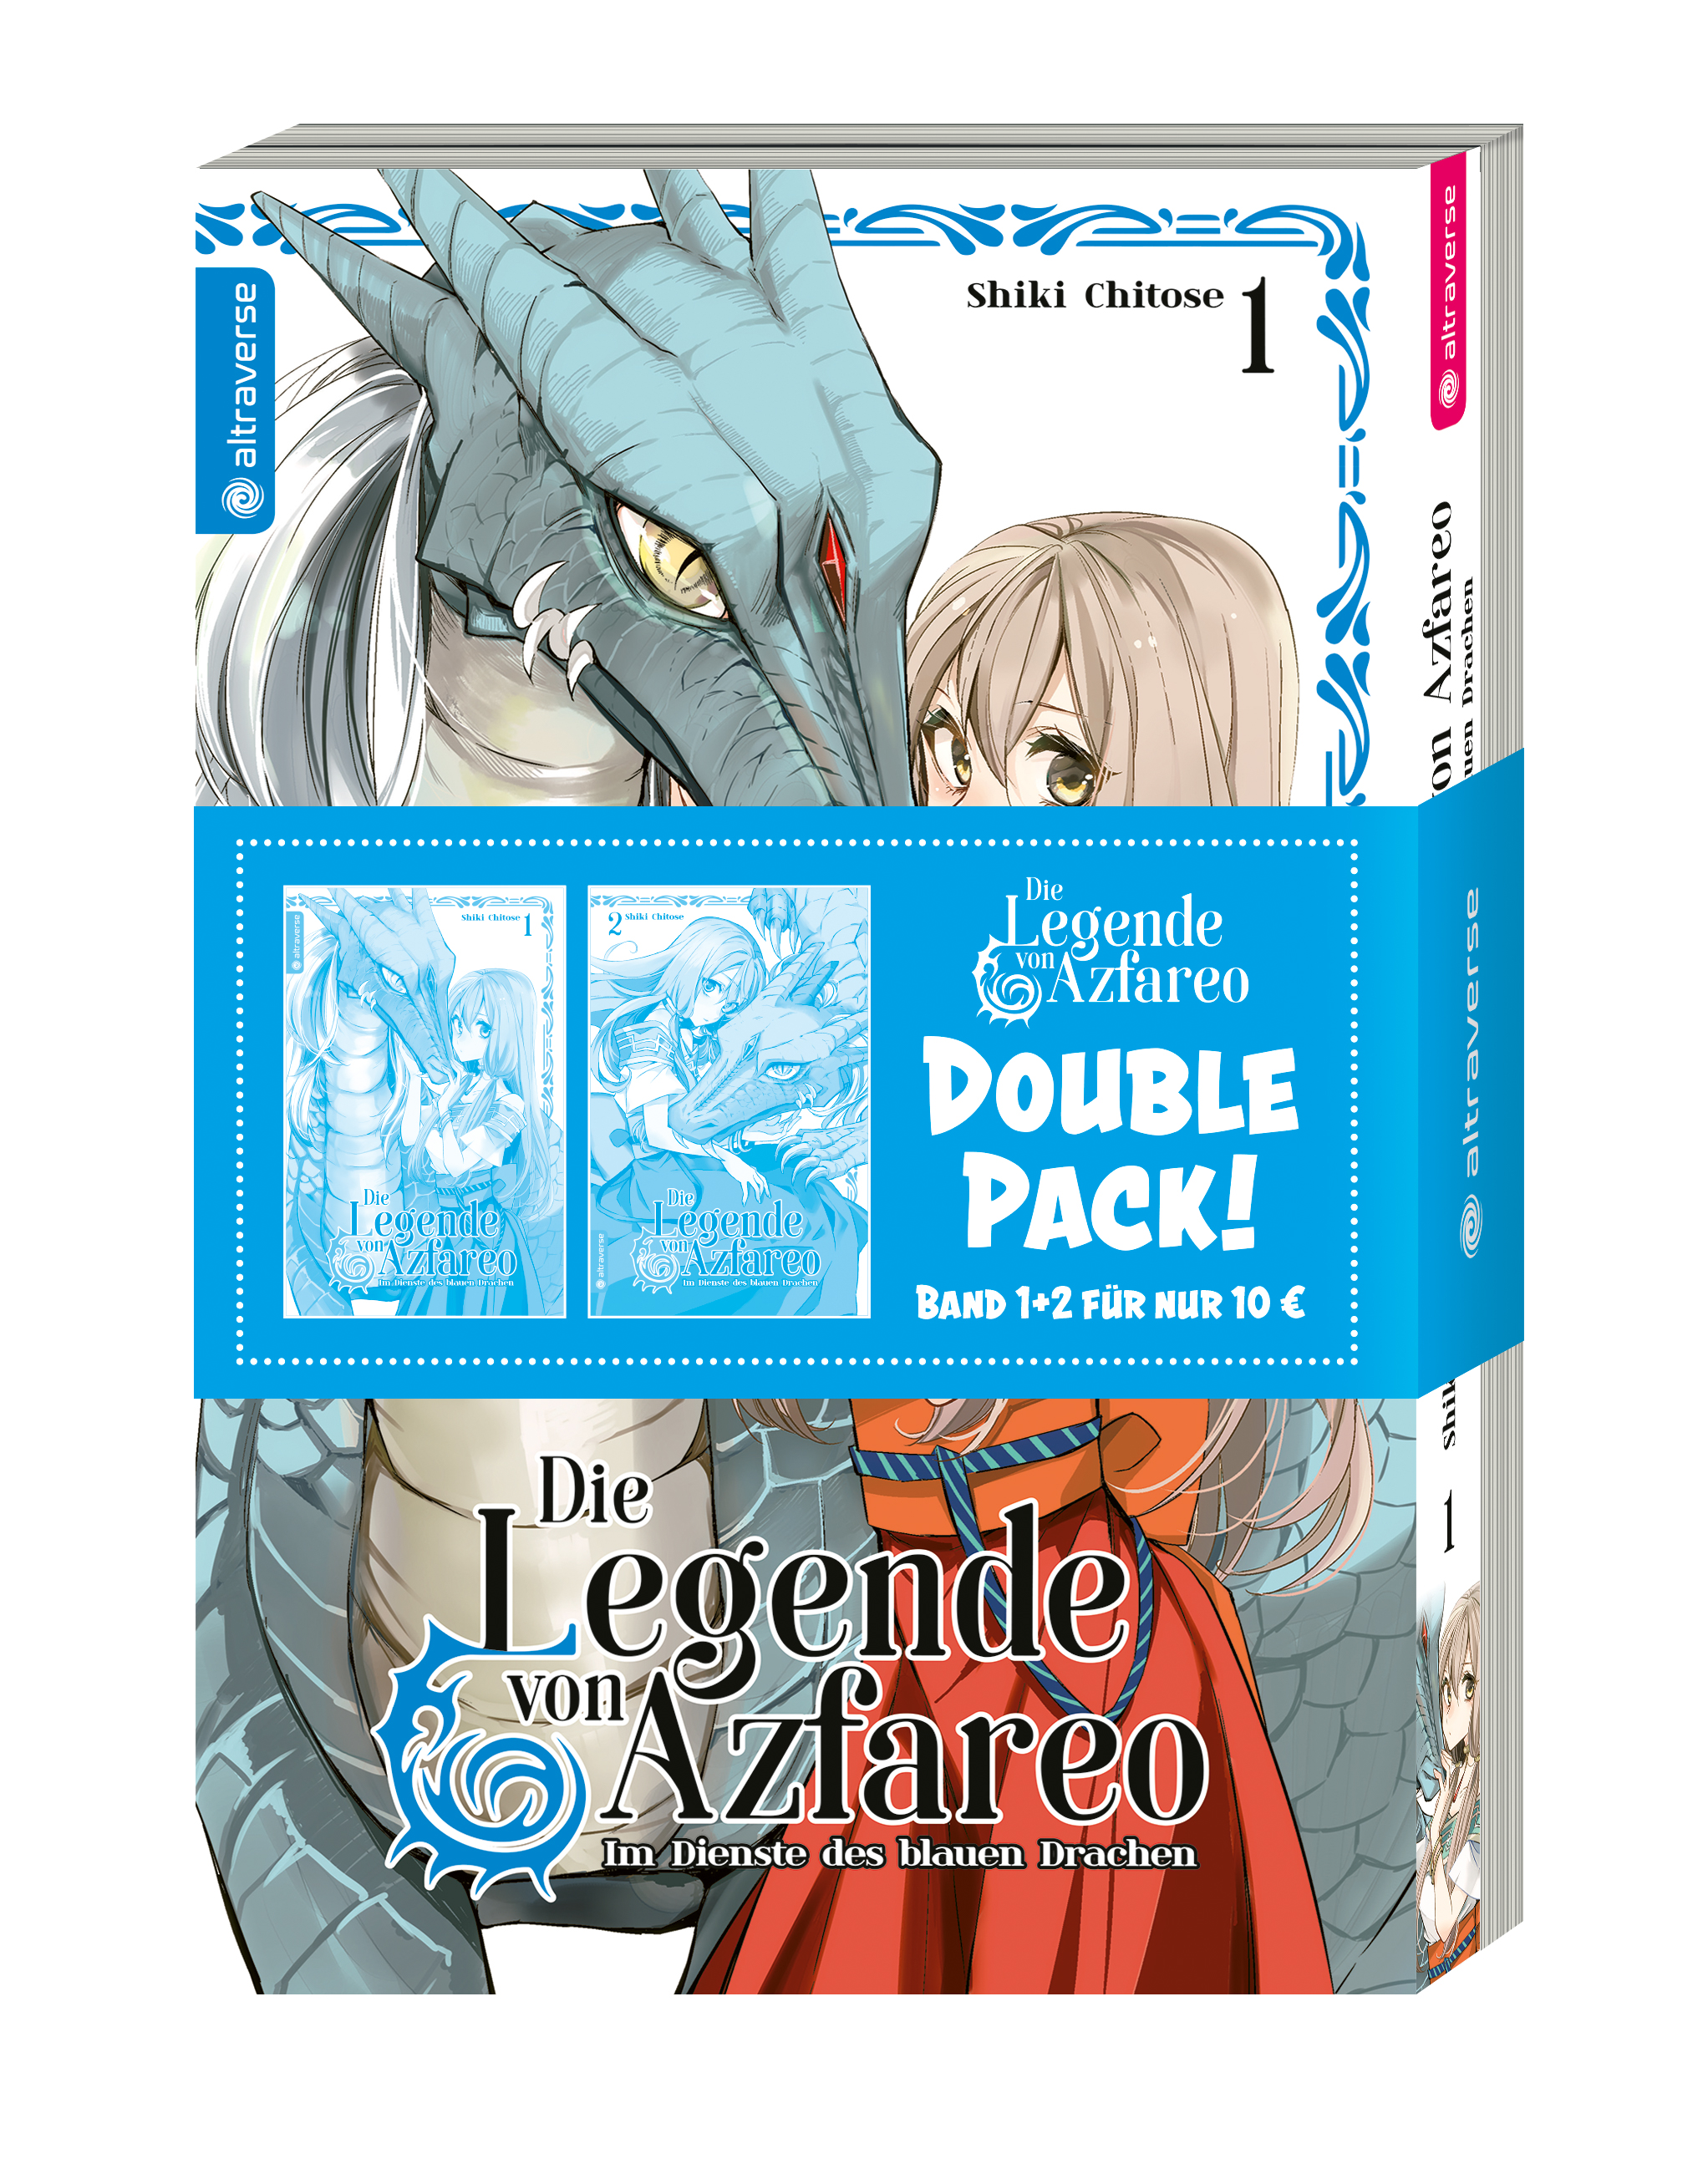 Die Legende von Azfareo – Im Dienste des blauen Drachen - Double Pack - Band 01 & 02